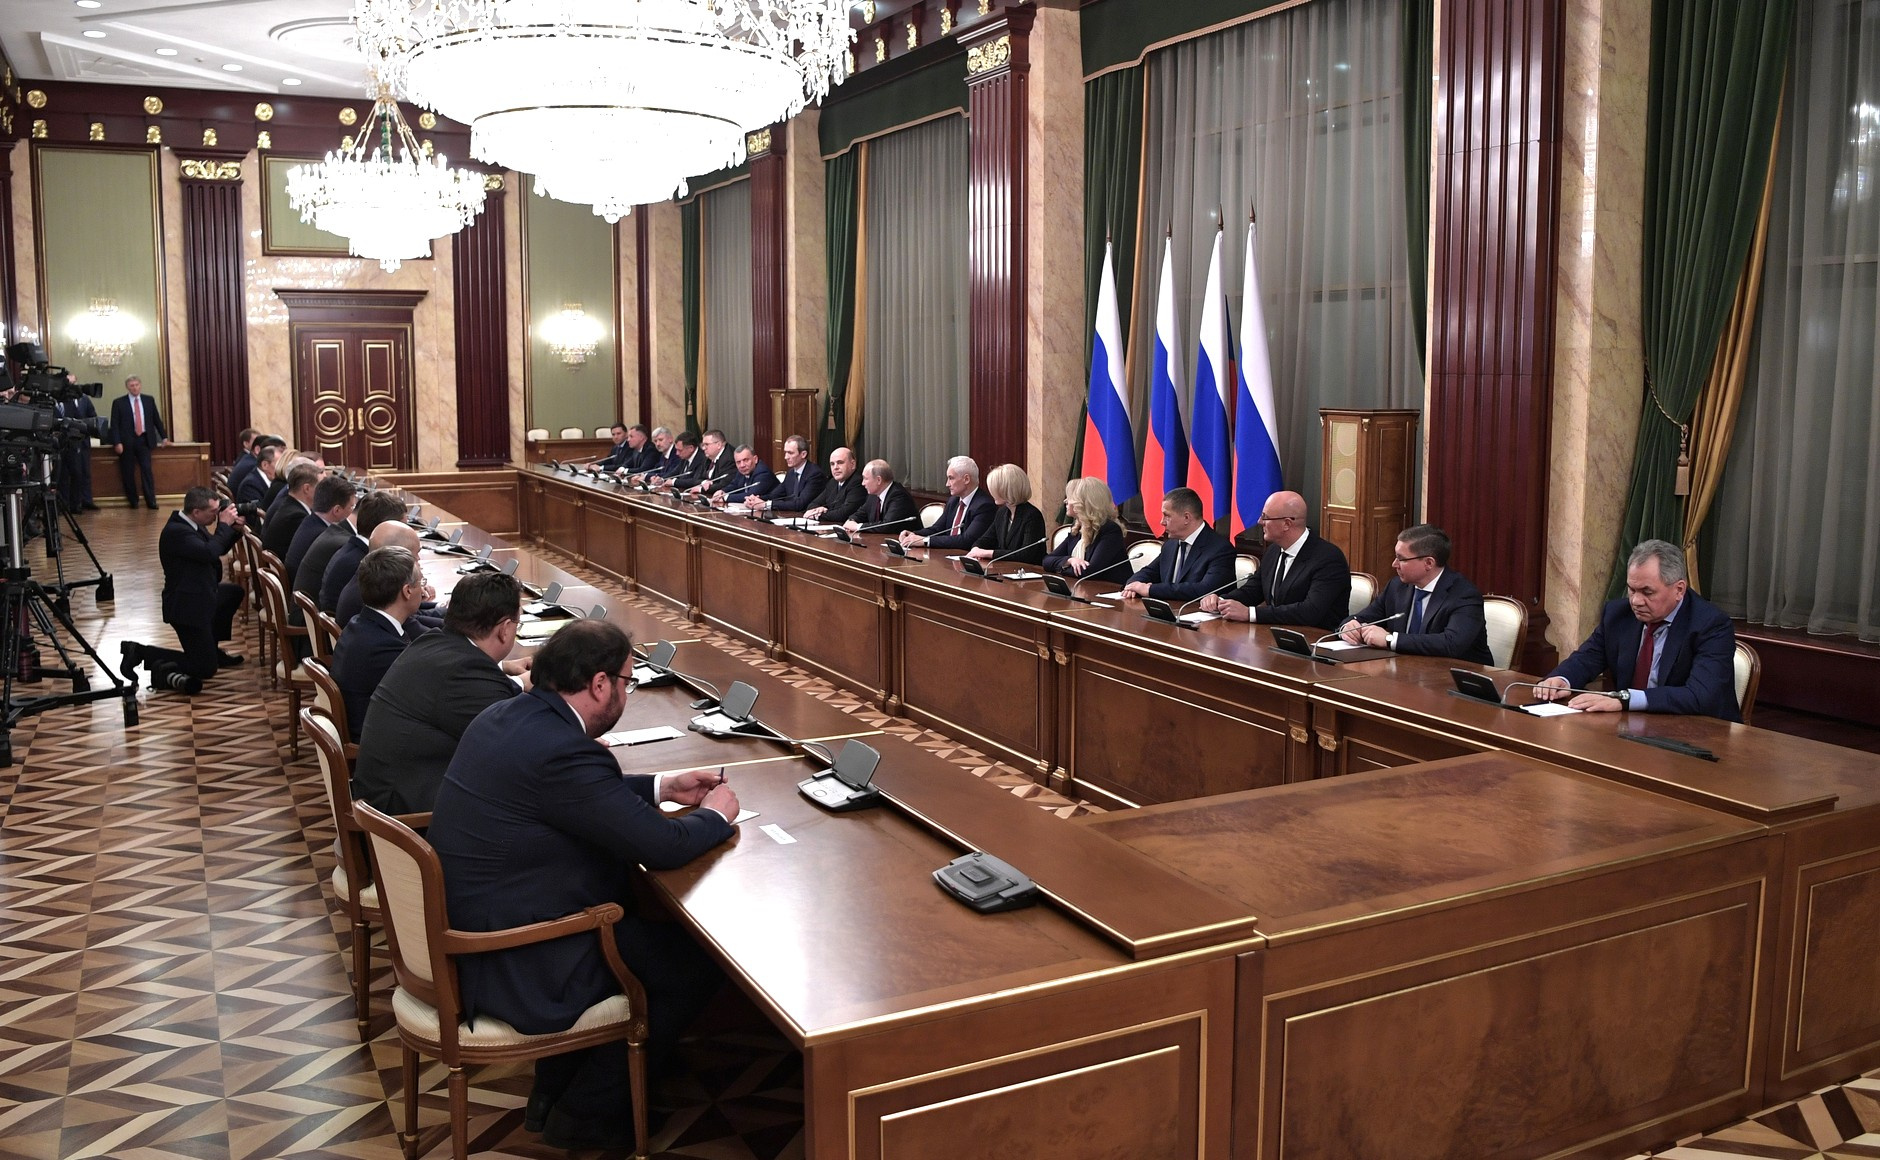 Накануне Ольга Любимова с другими членами нового правительства была на встрече с Владимиром Путиным в Кремле